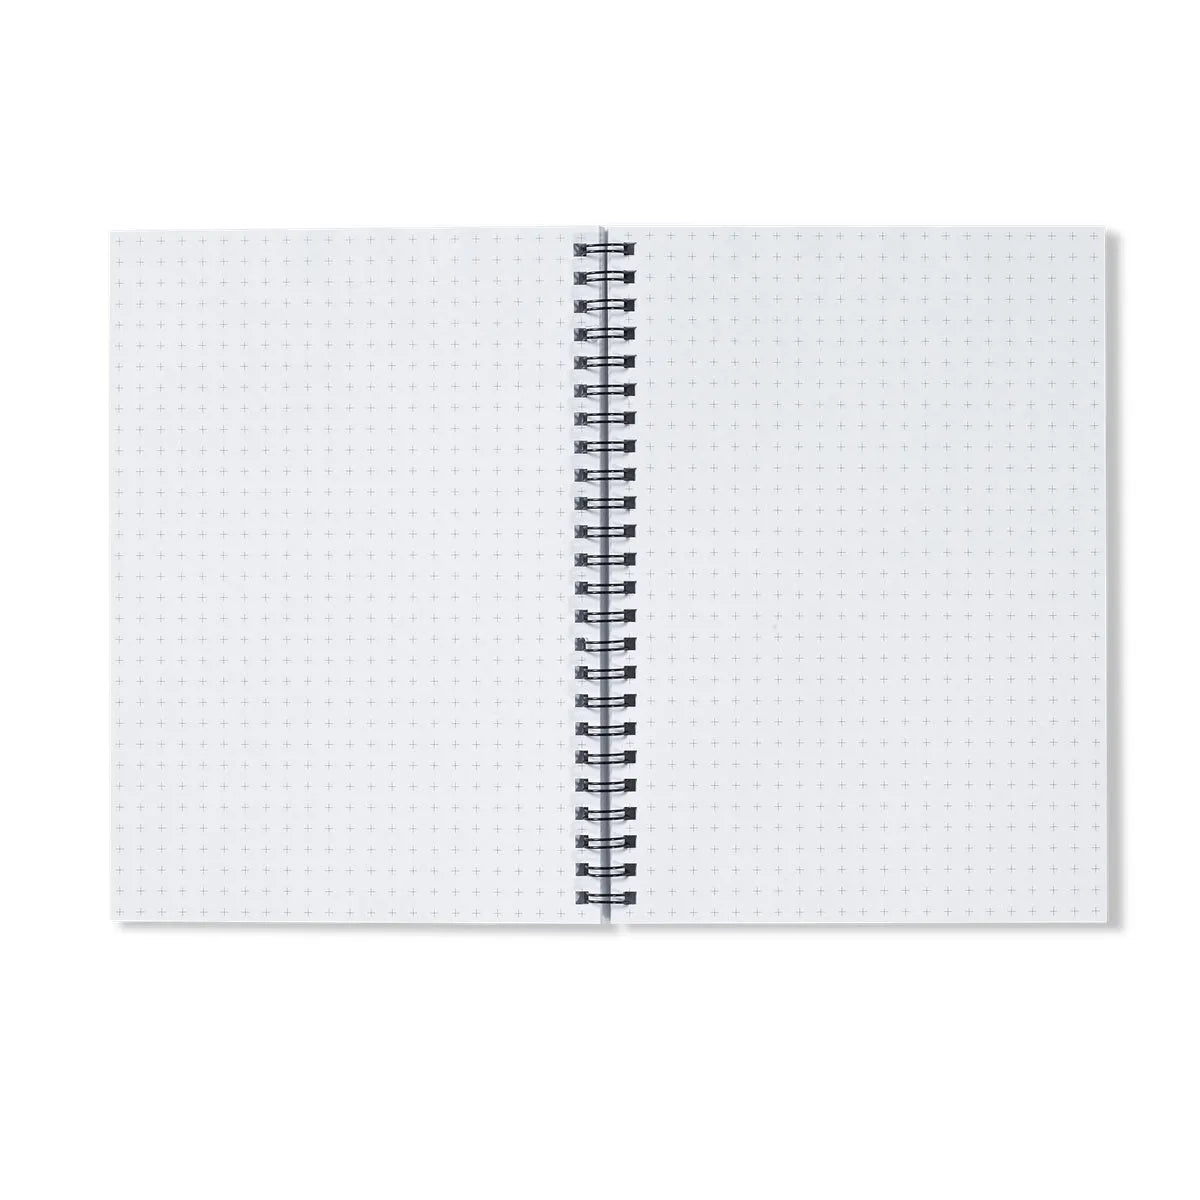 Another Grammar Of Ornament Pattern - Owen Jones Notebook - Notebooks & Notepads - Aesthetic Art